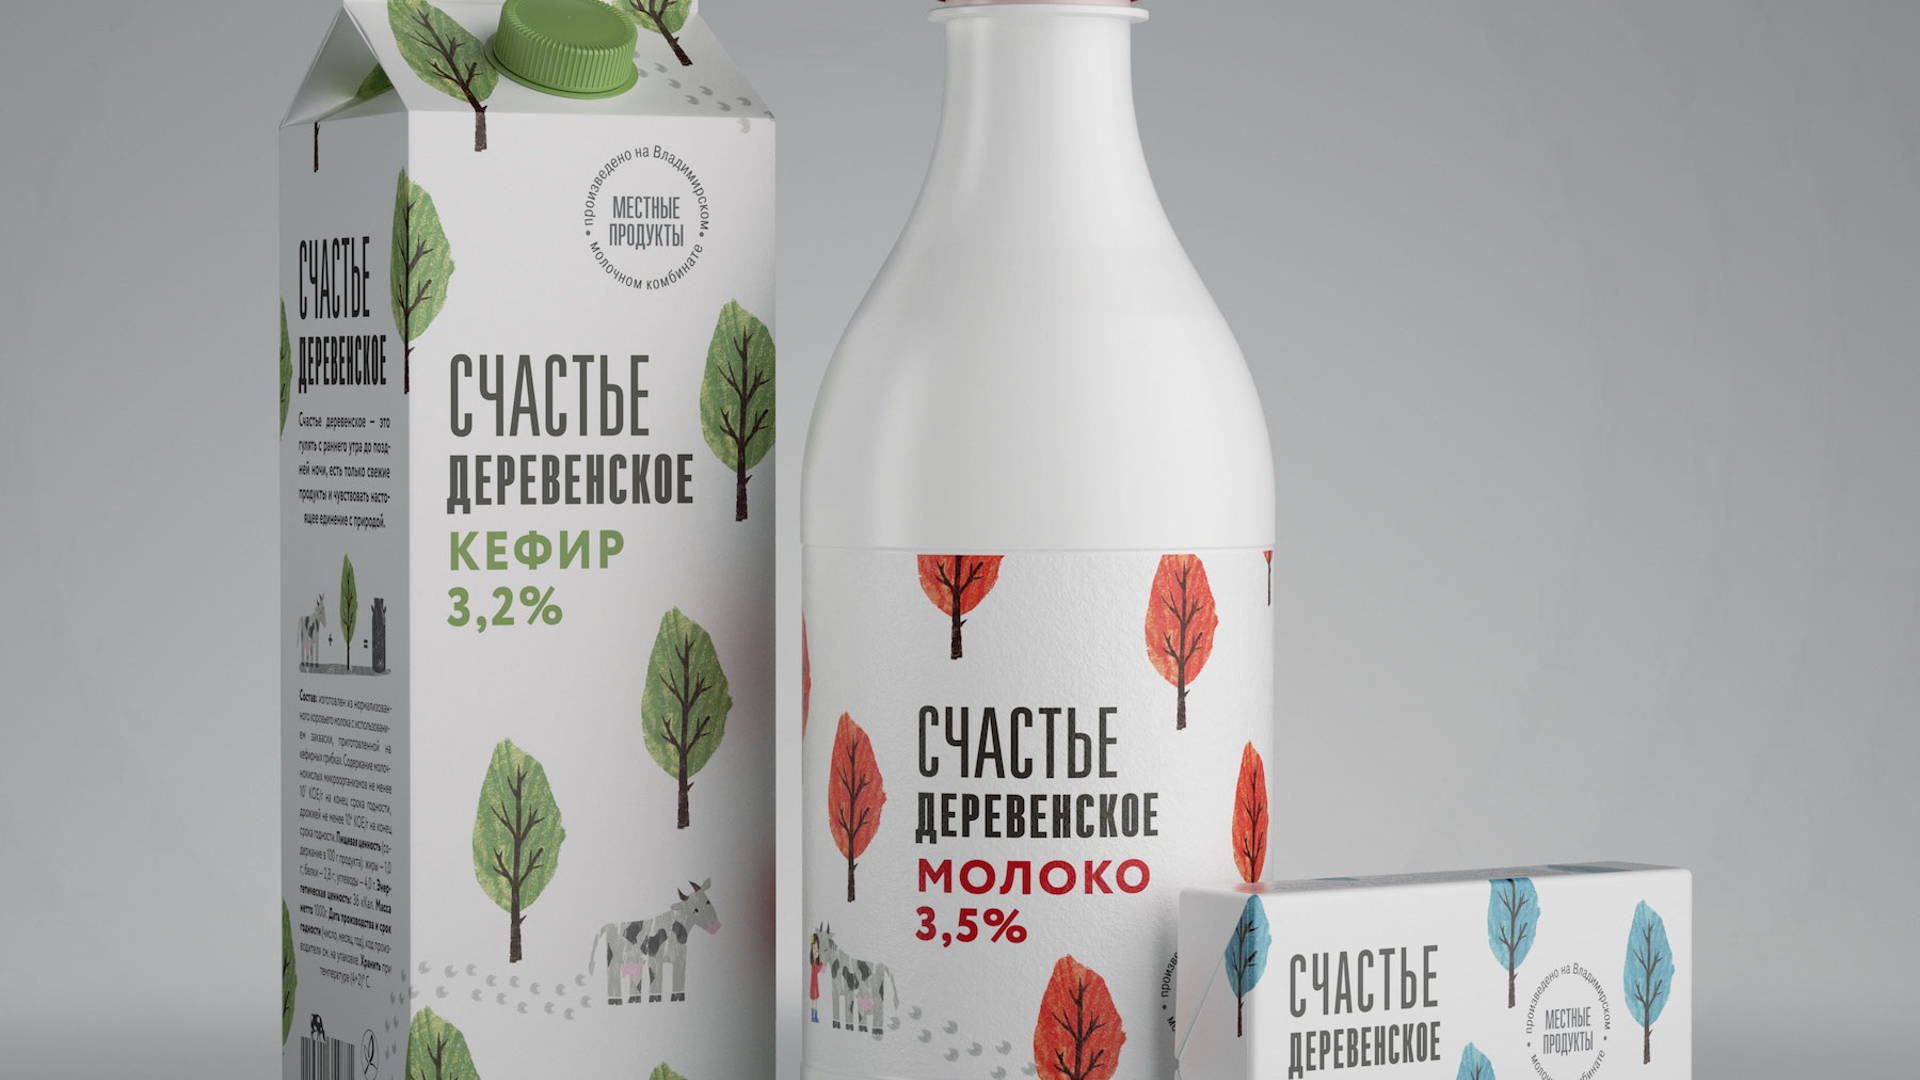 Mooving to a new milk jug  Dieline - Design, Branding & Packaging